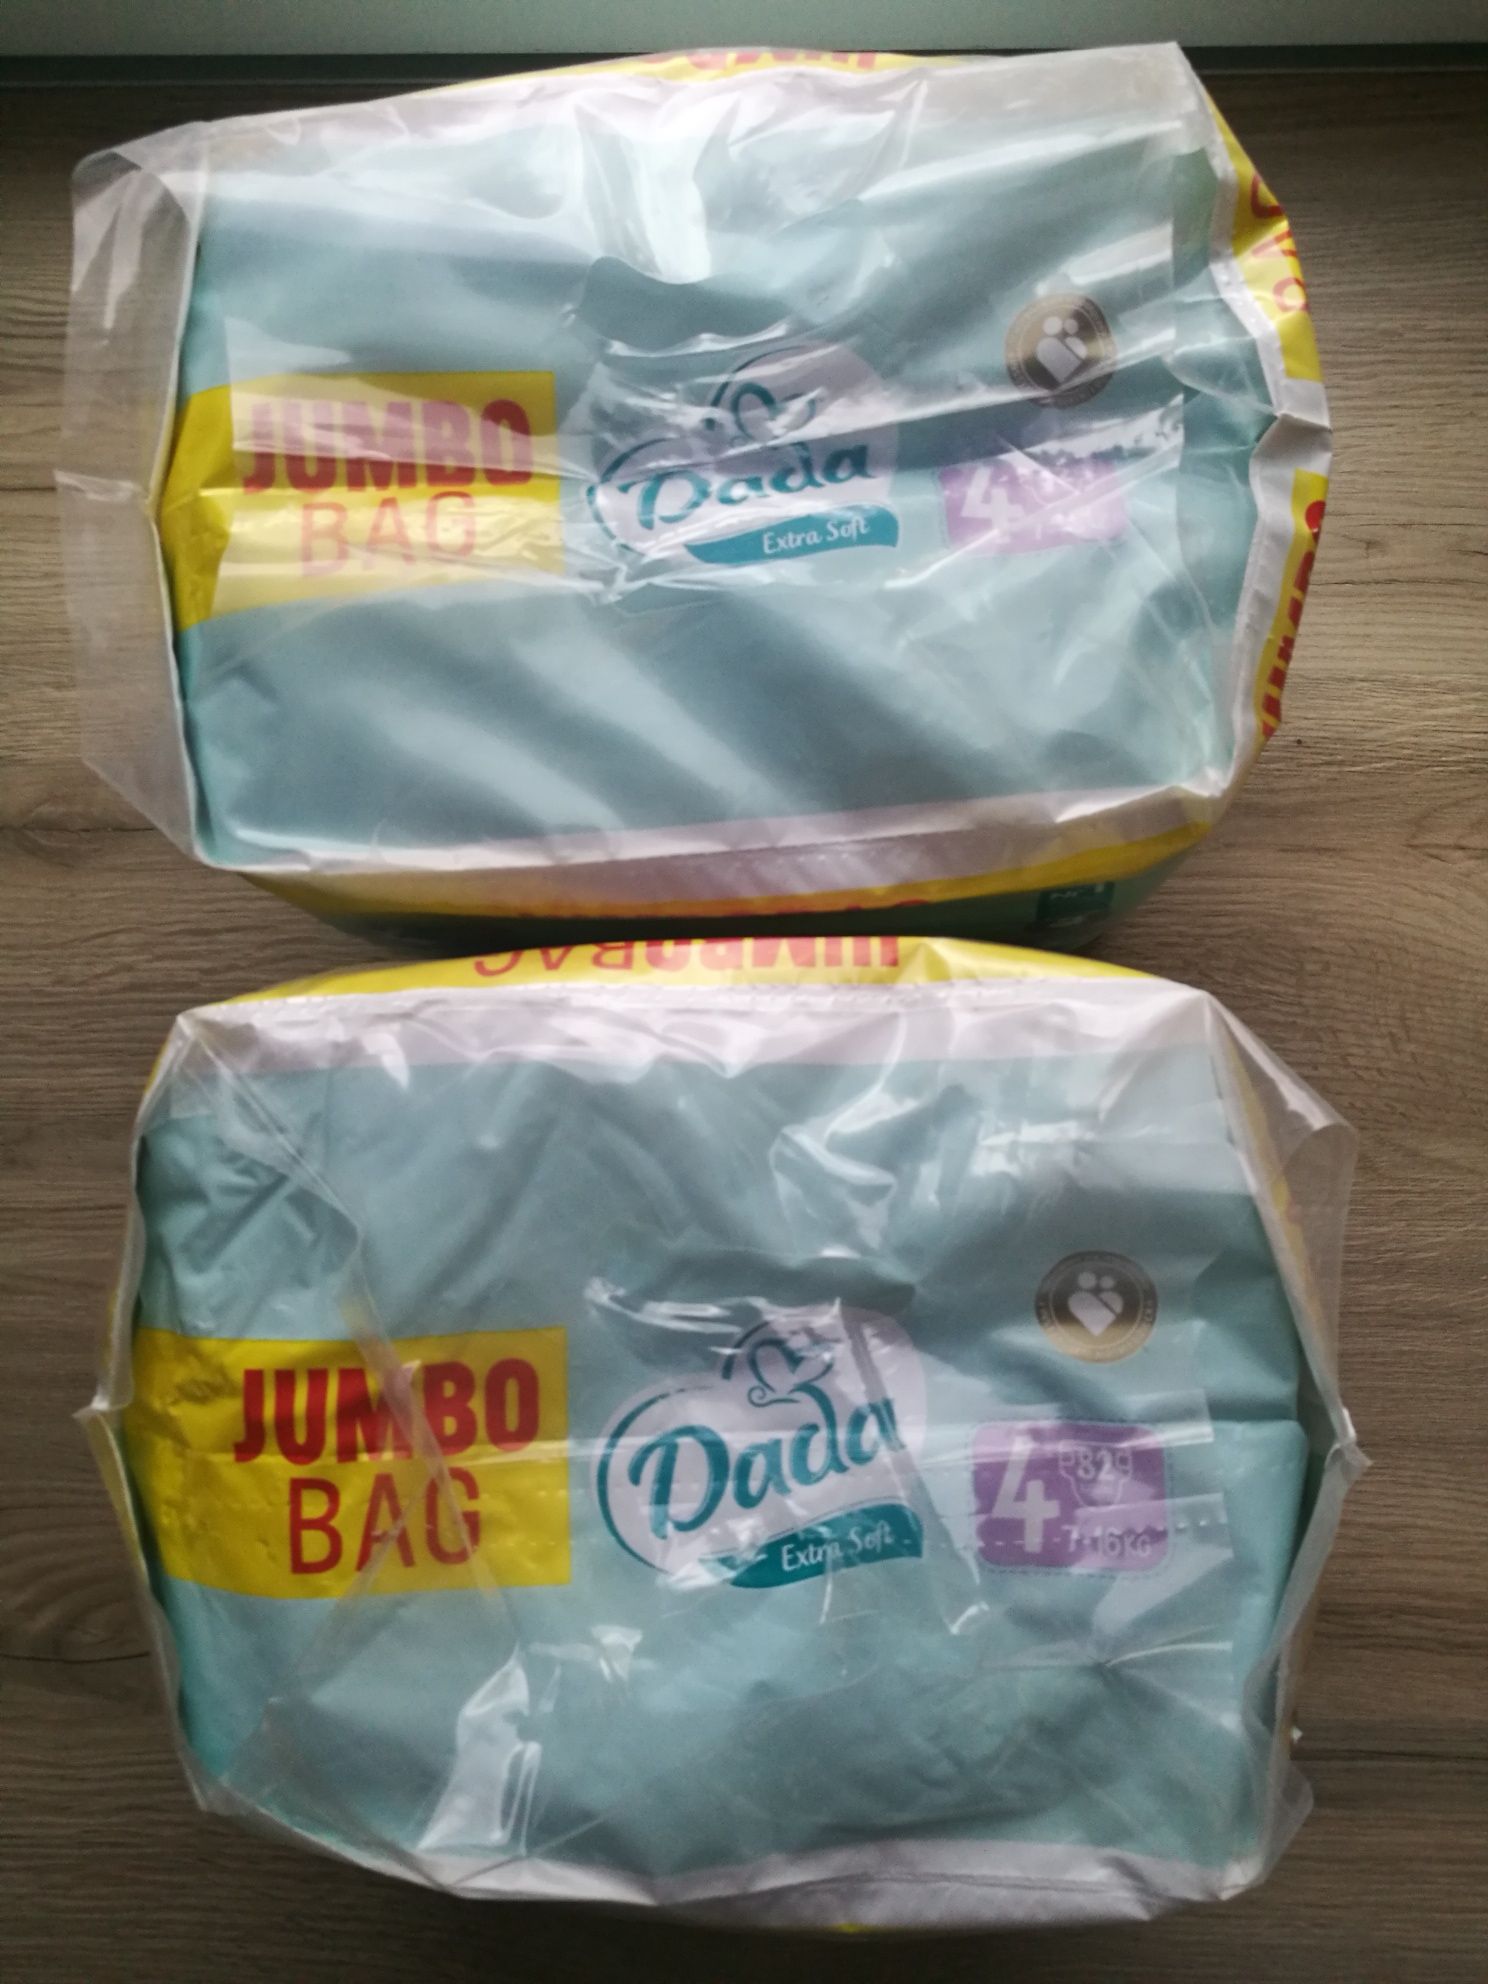 Pieluchy Dada 4 pampersy pieluszki extra soft 2 paczki jumbo bag